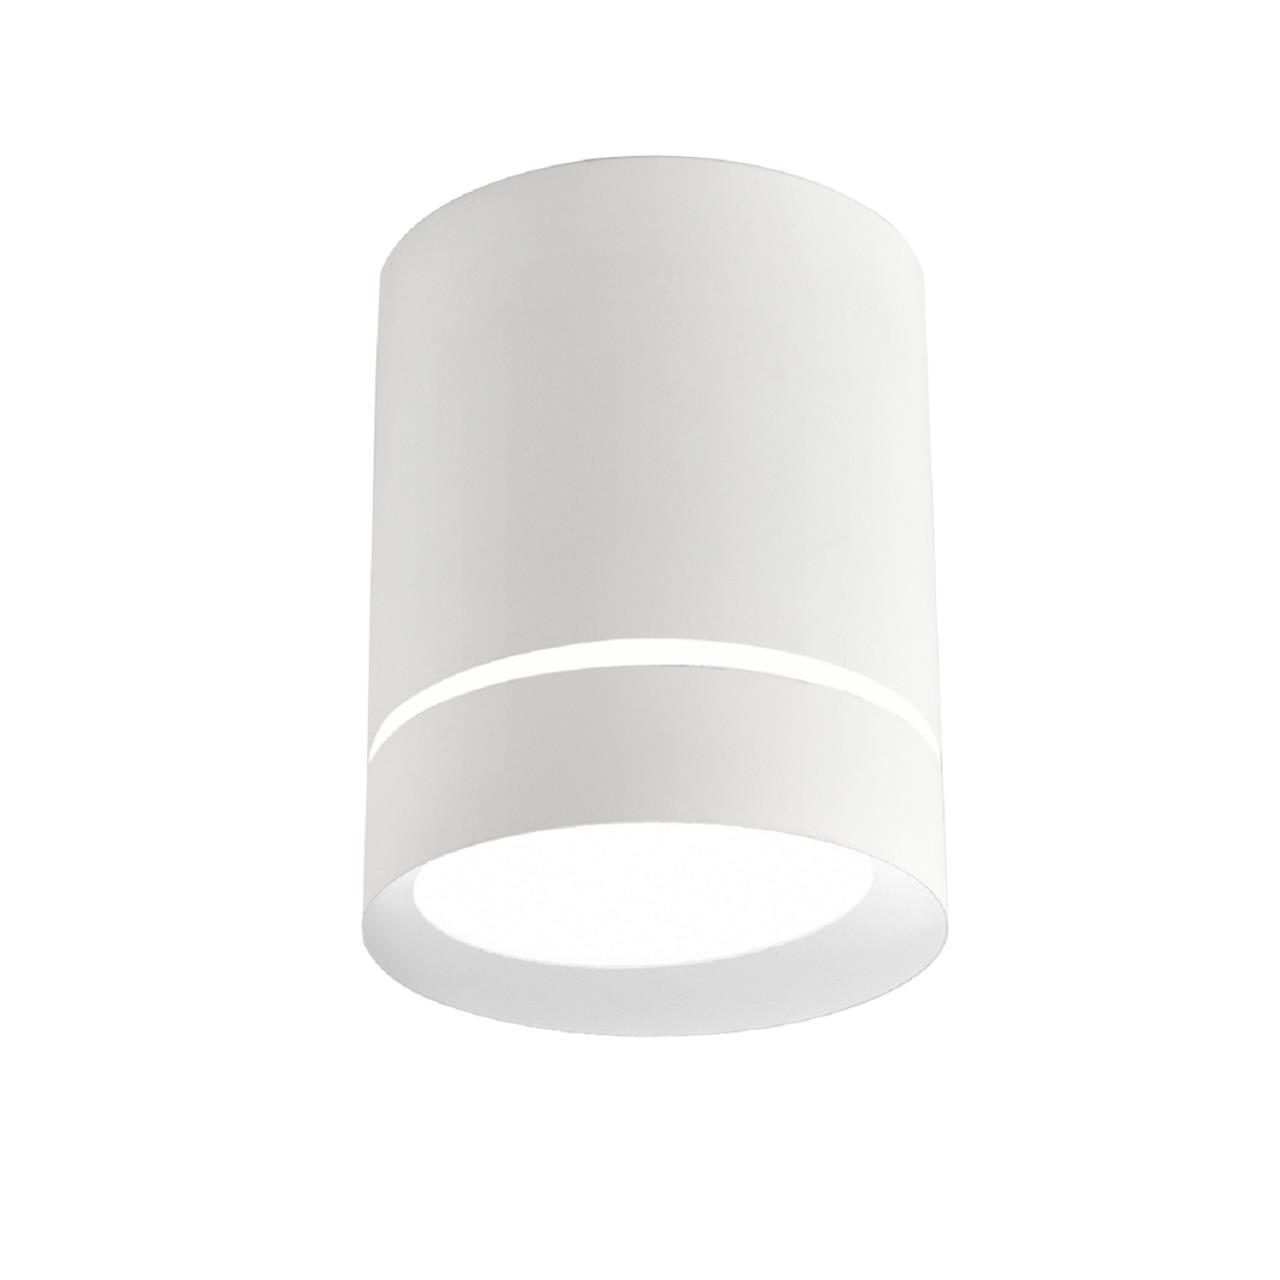 Светильник 8*8 см, GU10 10W, Favourite Darar 3064-1C, D79*H100, Светильник, каркас белого матового цвета, прозрачный декоративный элемент в виде кольца, лампу GU10 можно менять